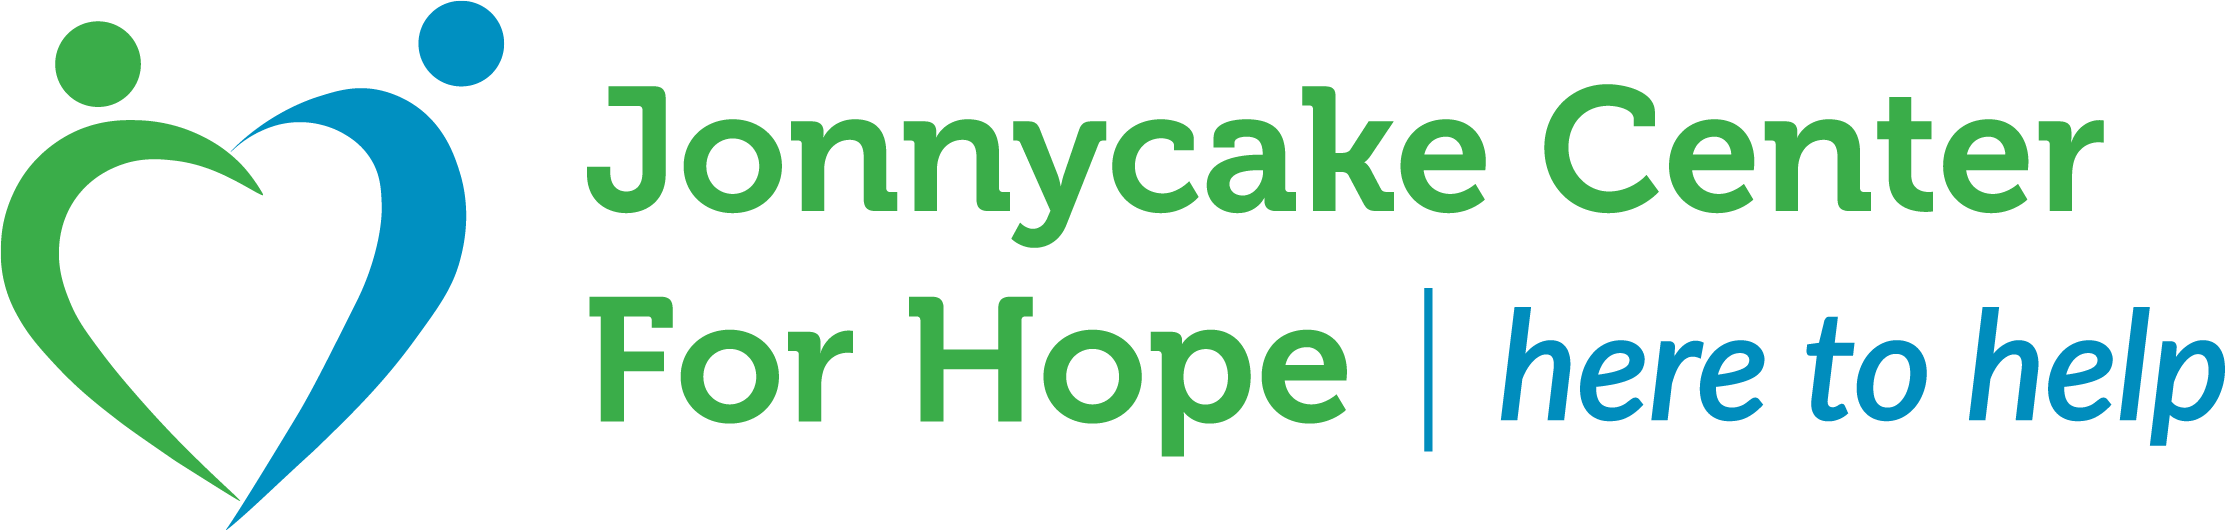 Jonnycake Center for Hope